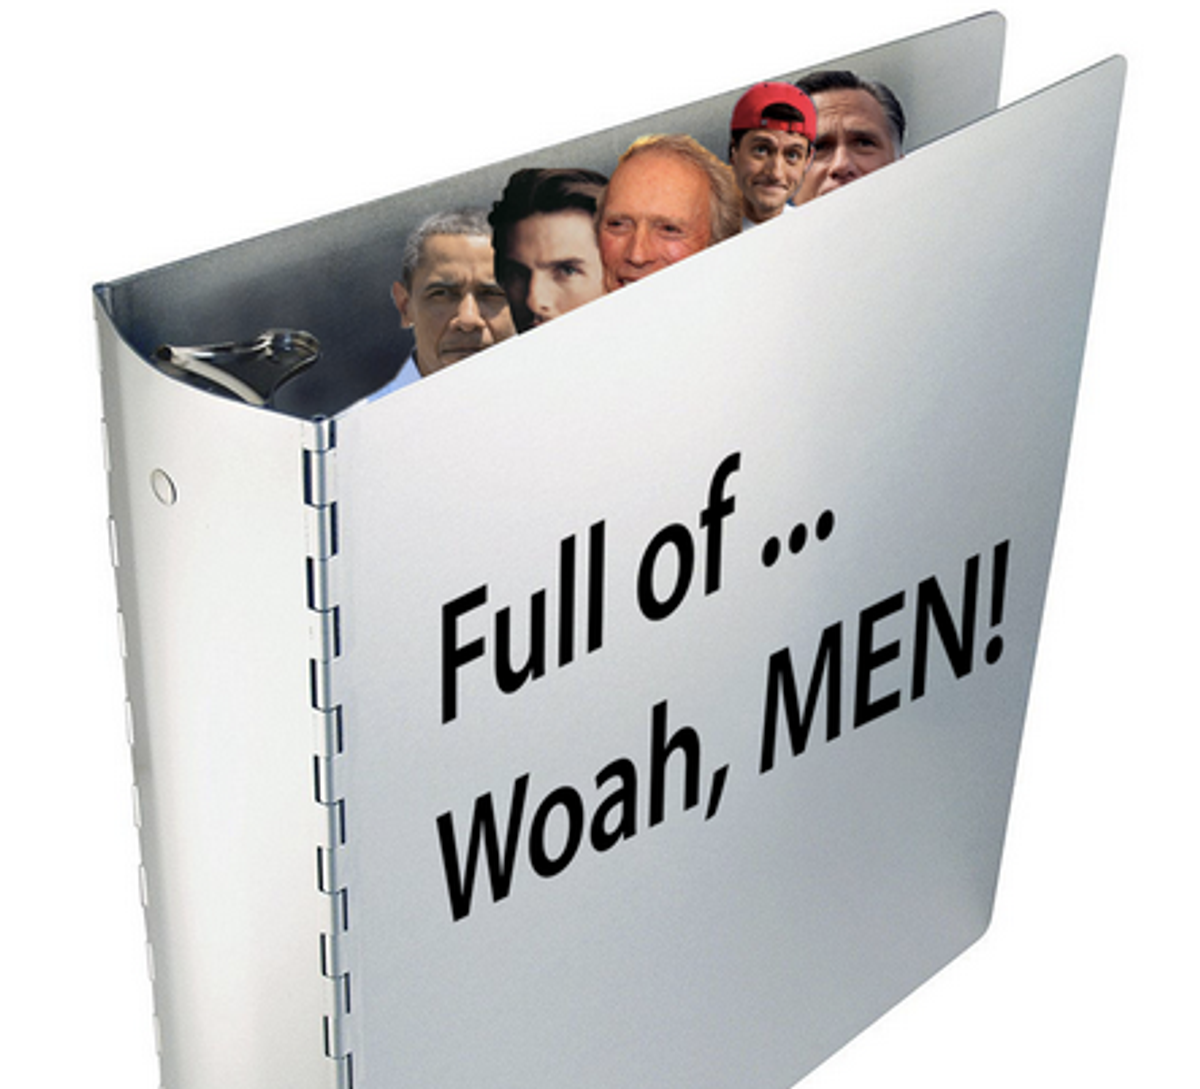 Binders full of Men, inspired by Romney's "Binders full of Women" comment  (BindersFullofWomen.tumblr.com)